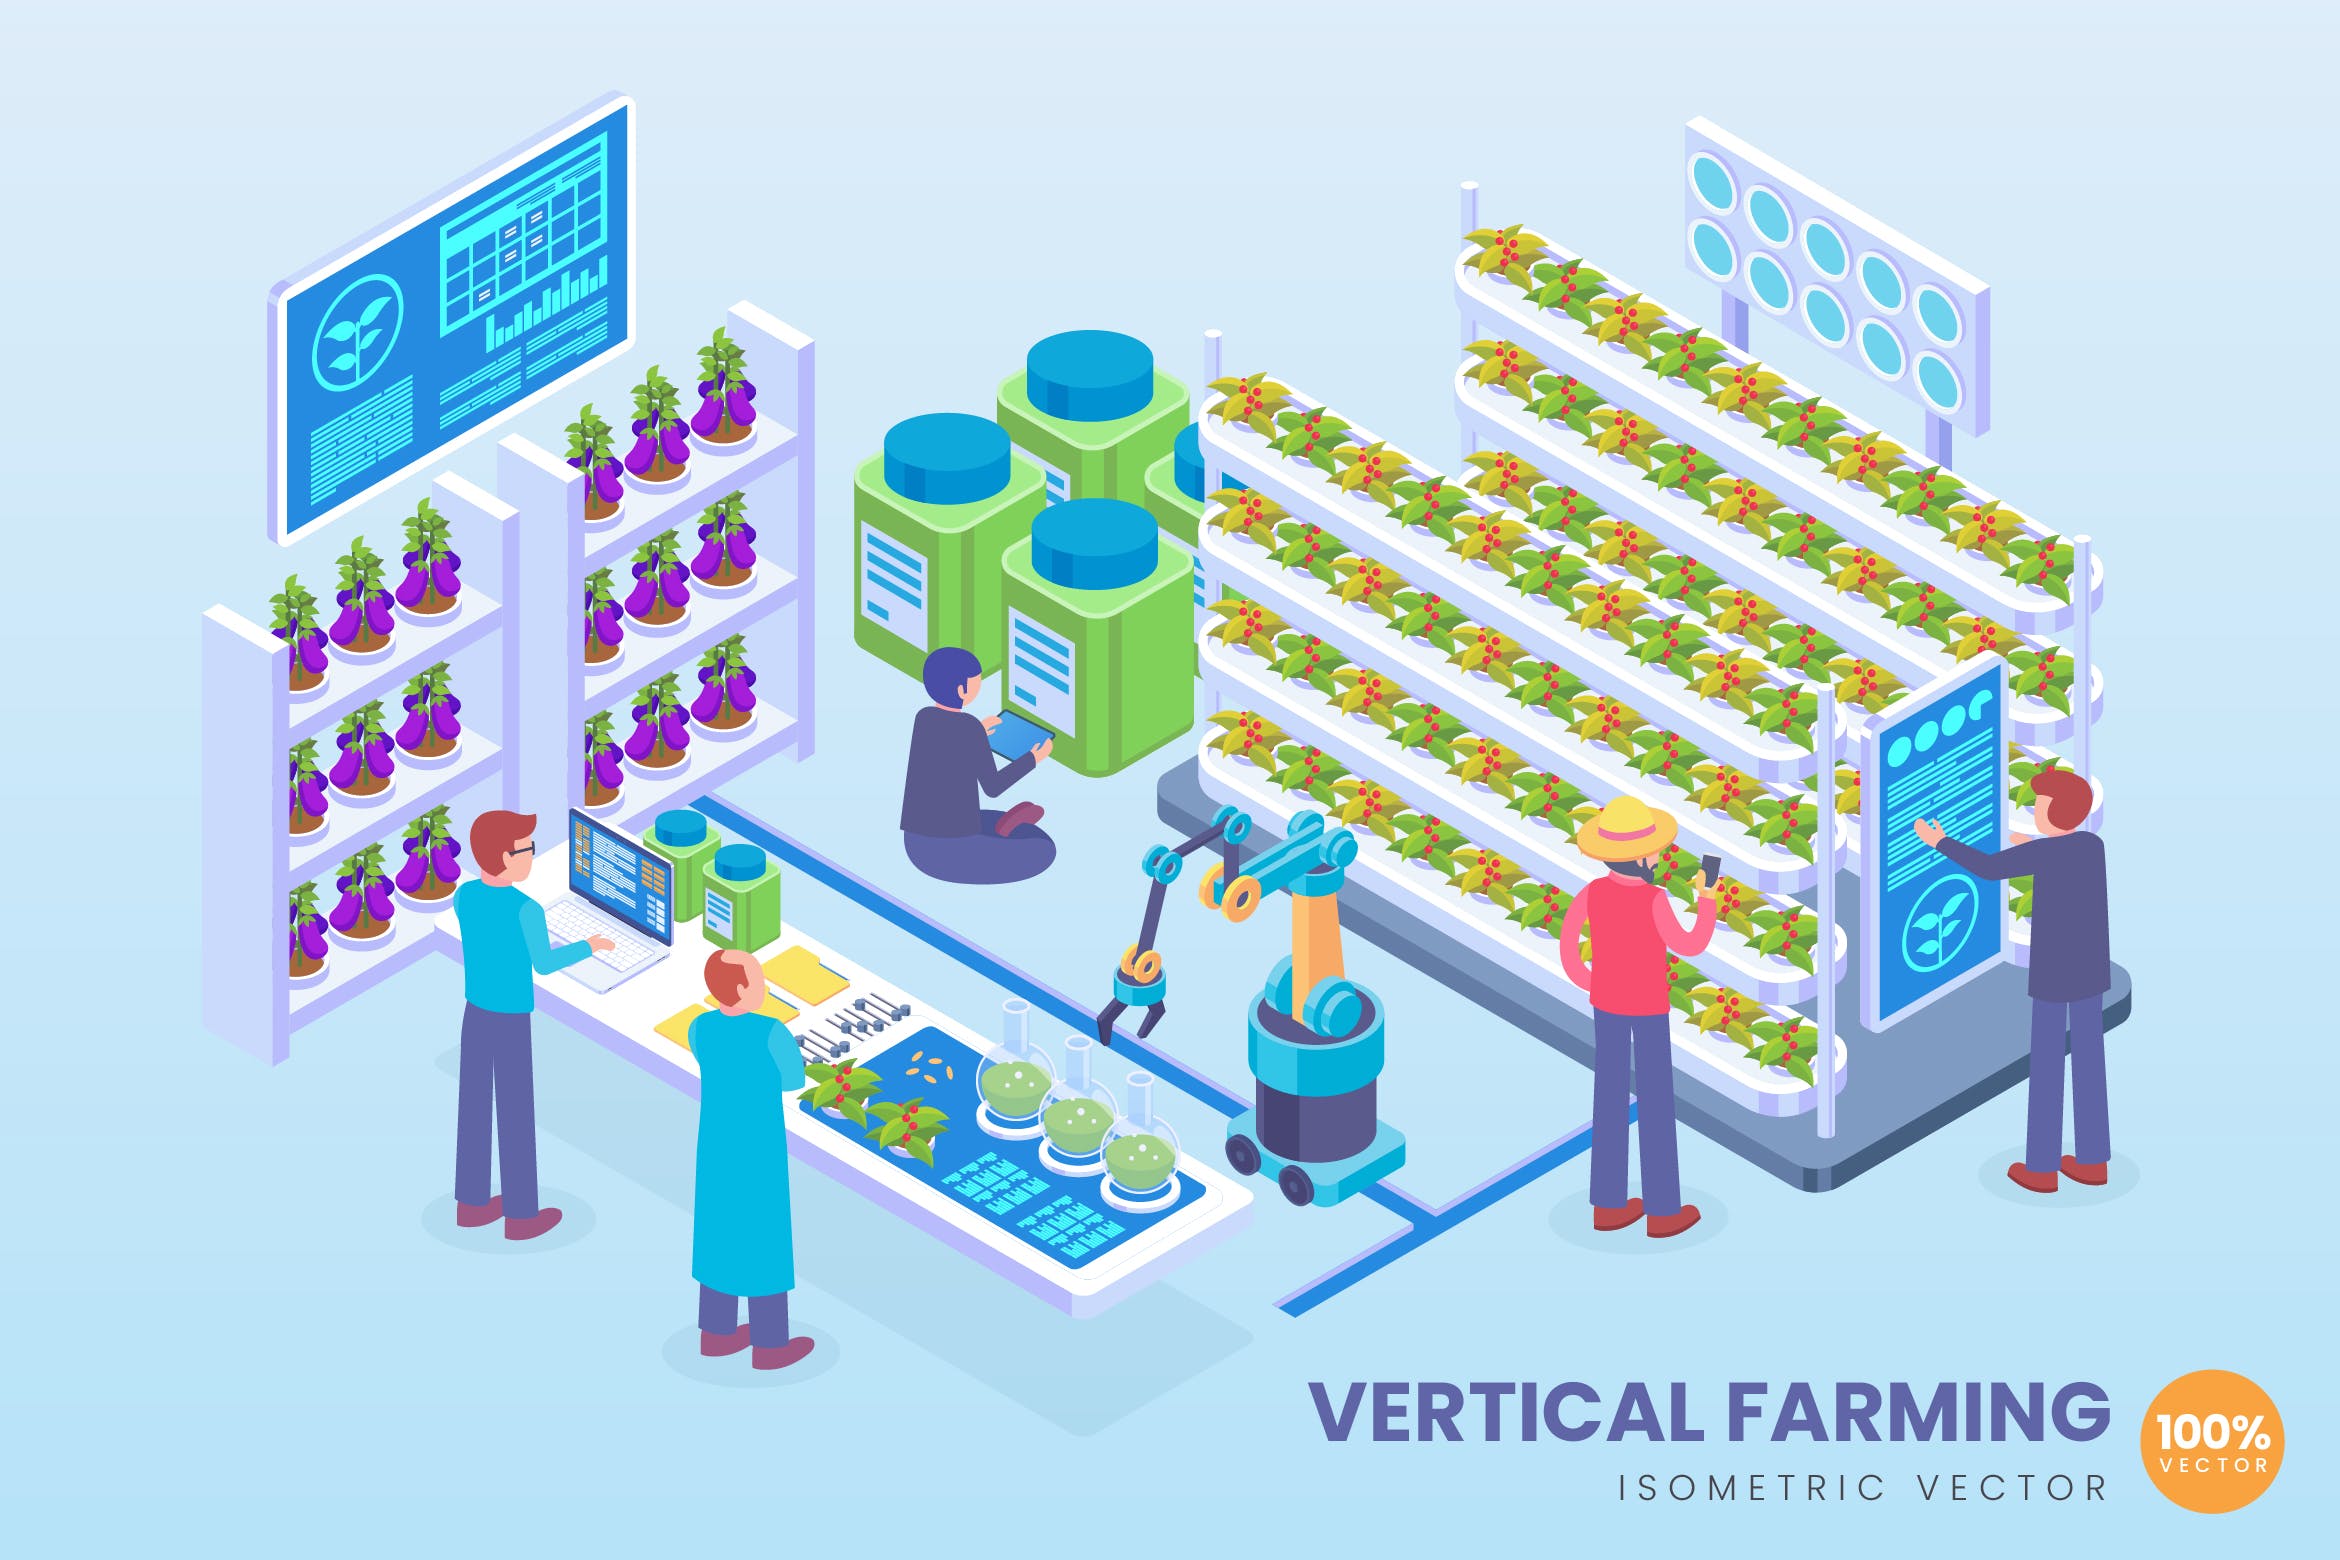 垂直耕作技术主题等距矢量素材库精选科技概念插画 Isometric Vertical Farming Technology Vector插图